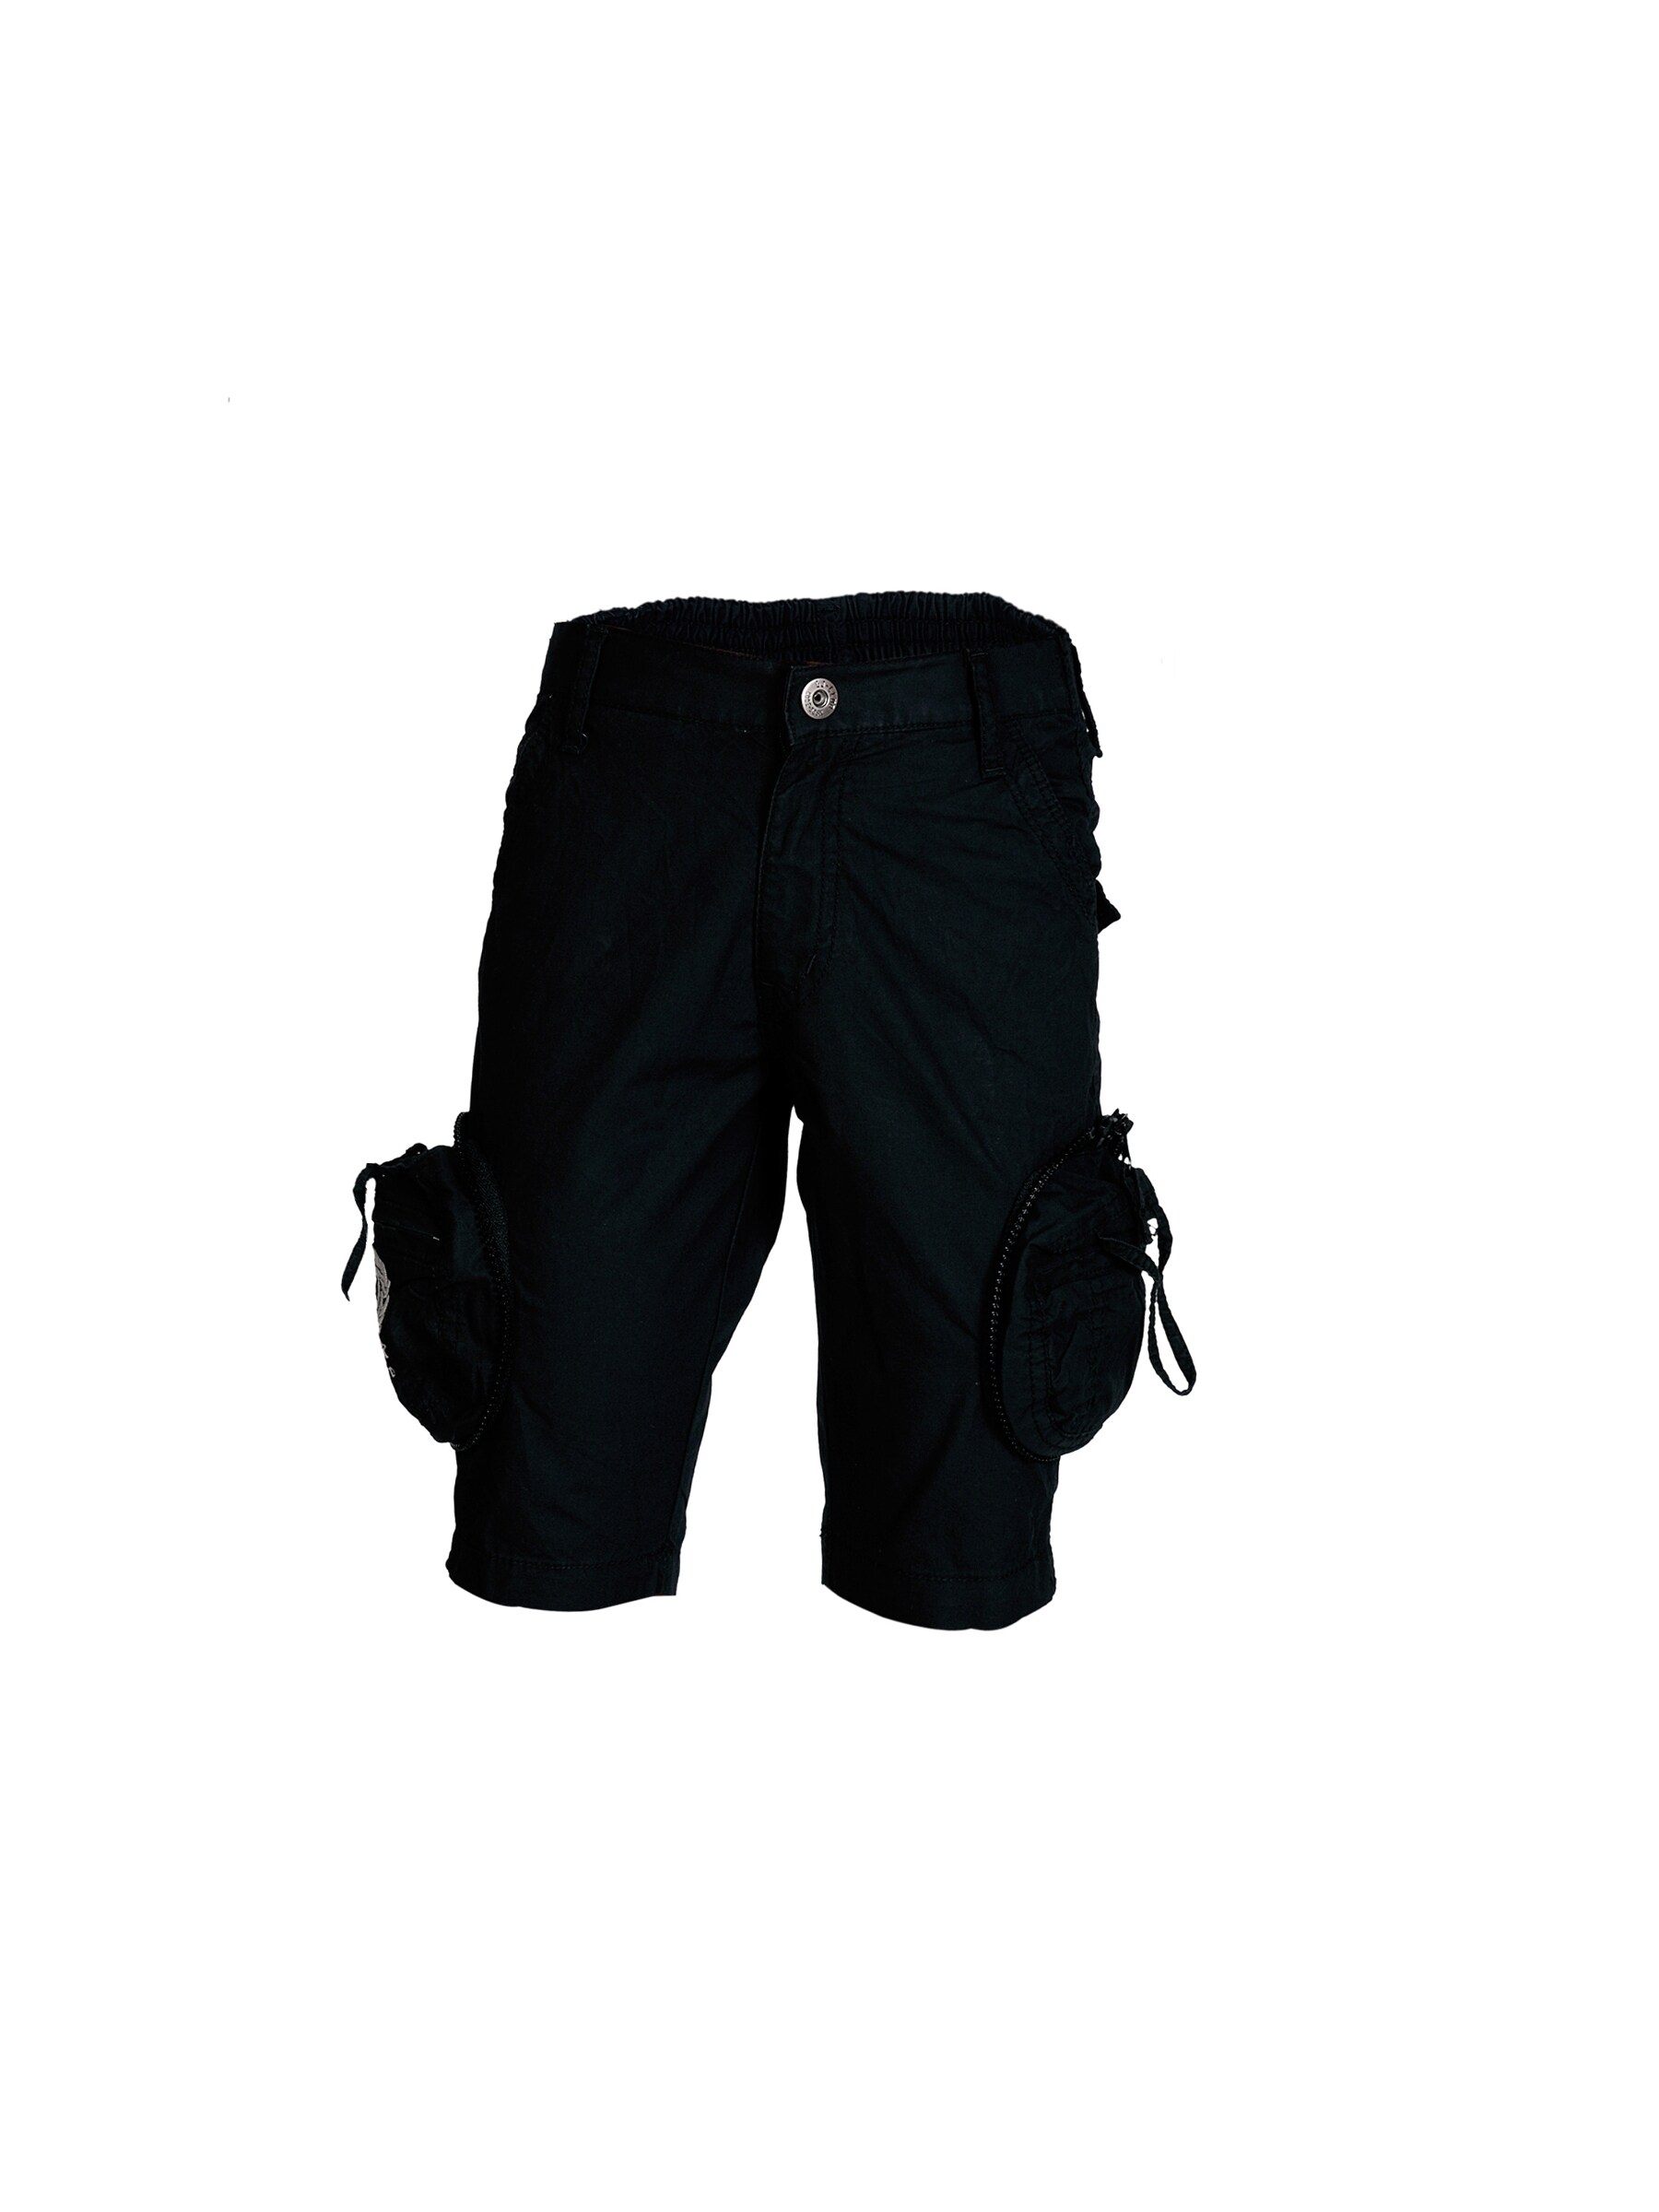 Gini and Jony Boys Customised Black Shorts